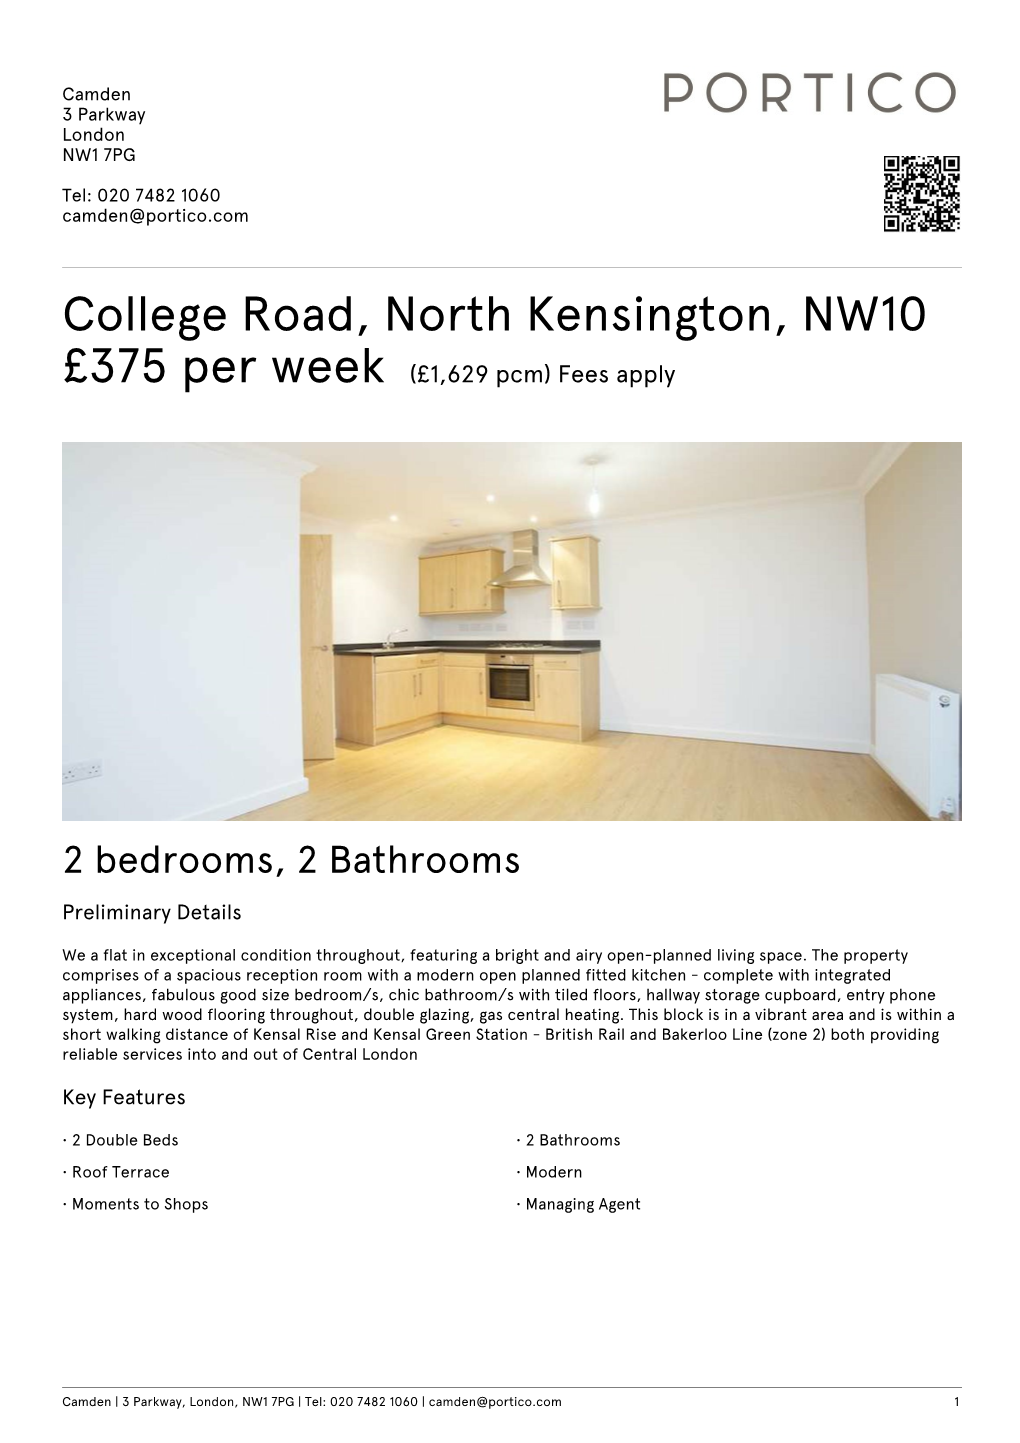 College Road, North Kensington, NW10 £375 Per Week